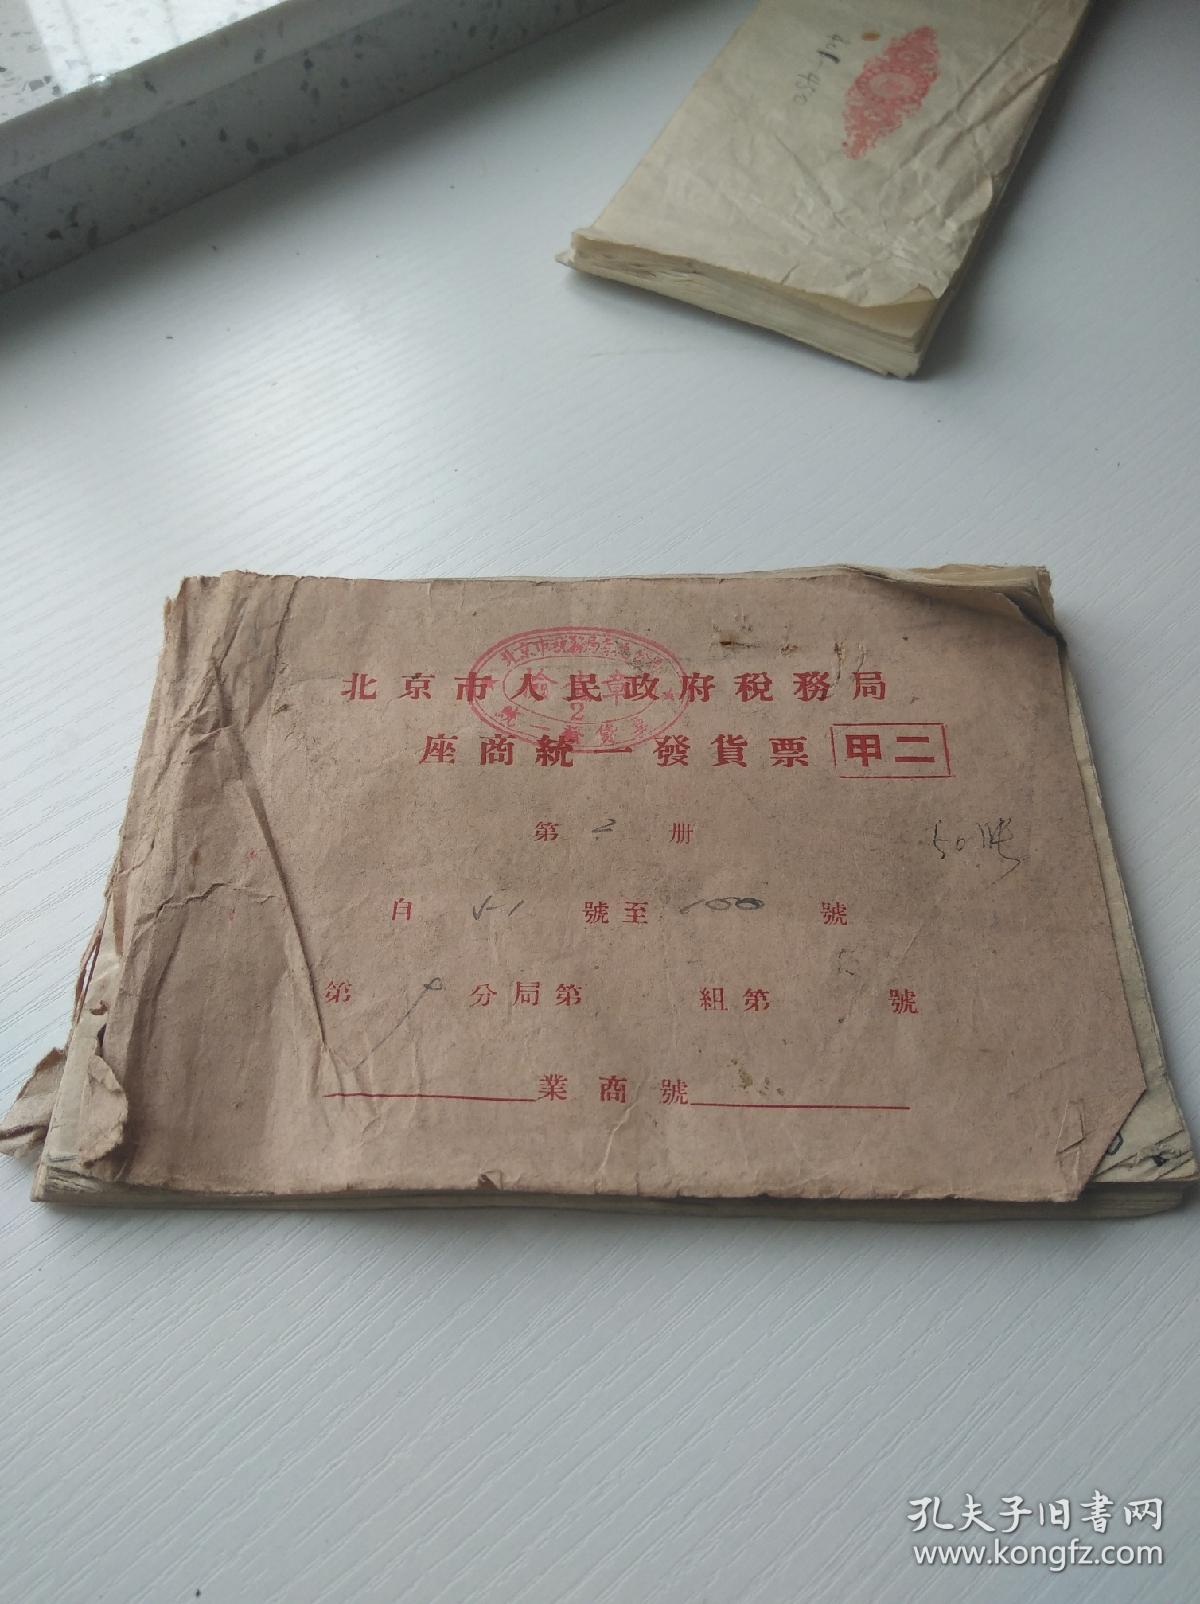 1951年北京市座商统一发货票存根，1本50张，已使用 印花总贴。每张上面都有 抗美援朝 标语